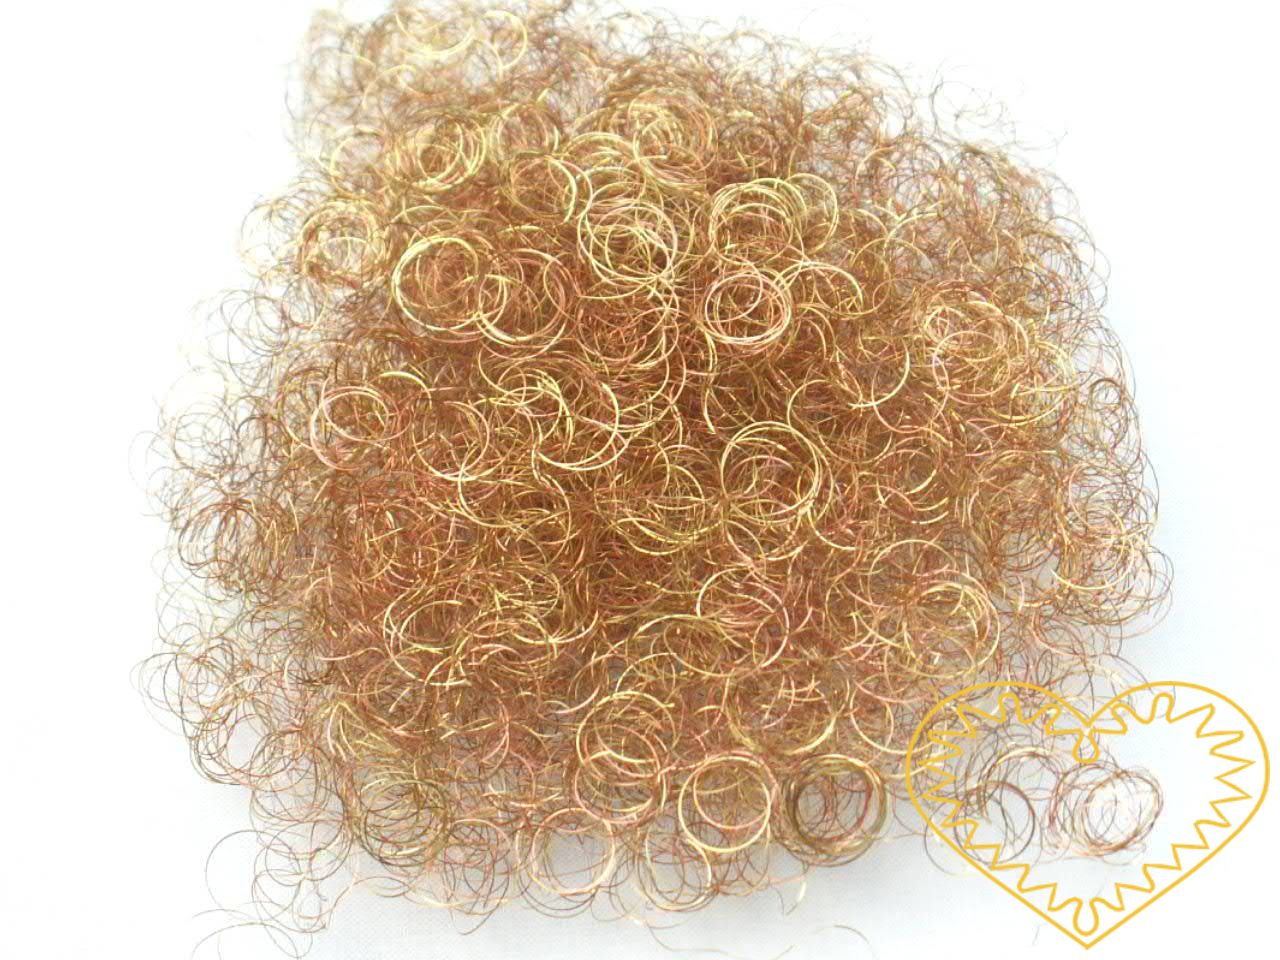 Andělské vlasy červená a zlatá - baroko 20 g. Mají široké využití - uplatní se při aranžování, tvorbě nejrůznějších dekorací, ale např. i jako vlásky na figurku či maňáska. Tím, že jsou tyto vlasy namíchány ze dvou barev, vzniká tak zajímavý barevný 